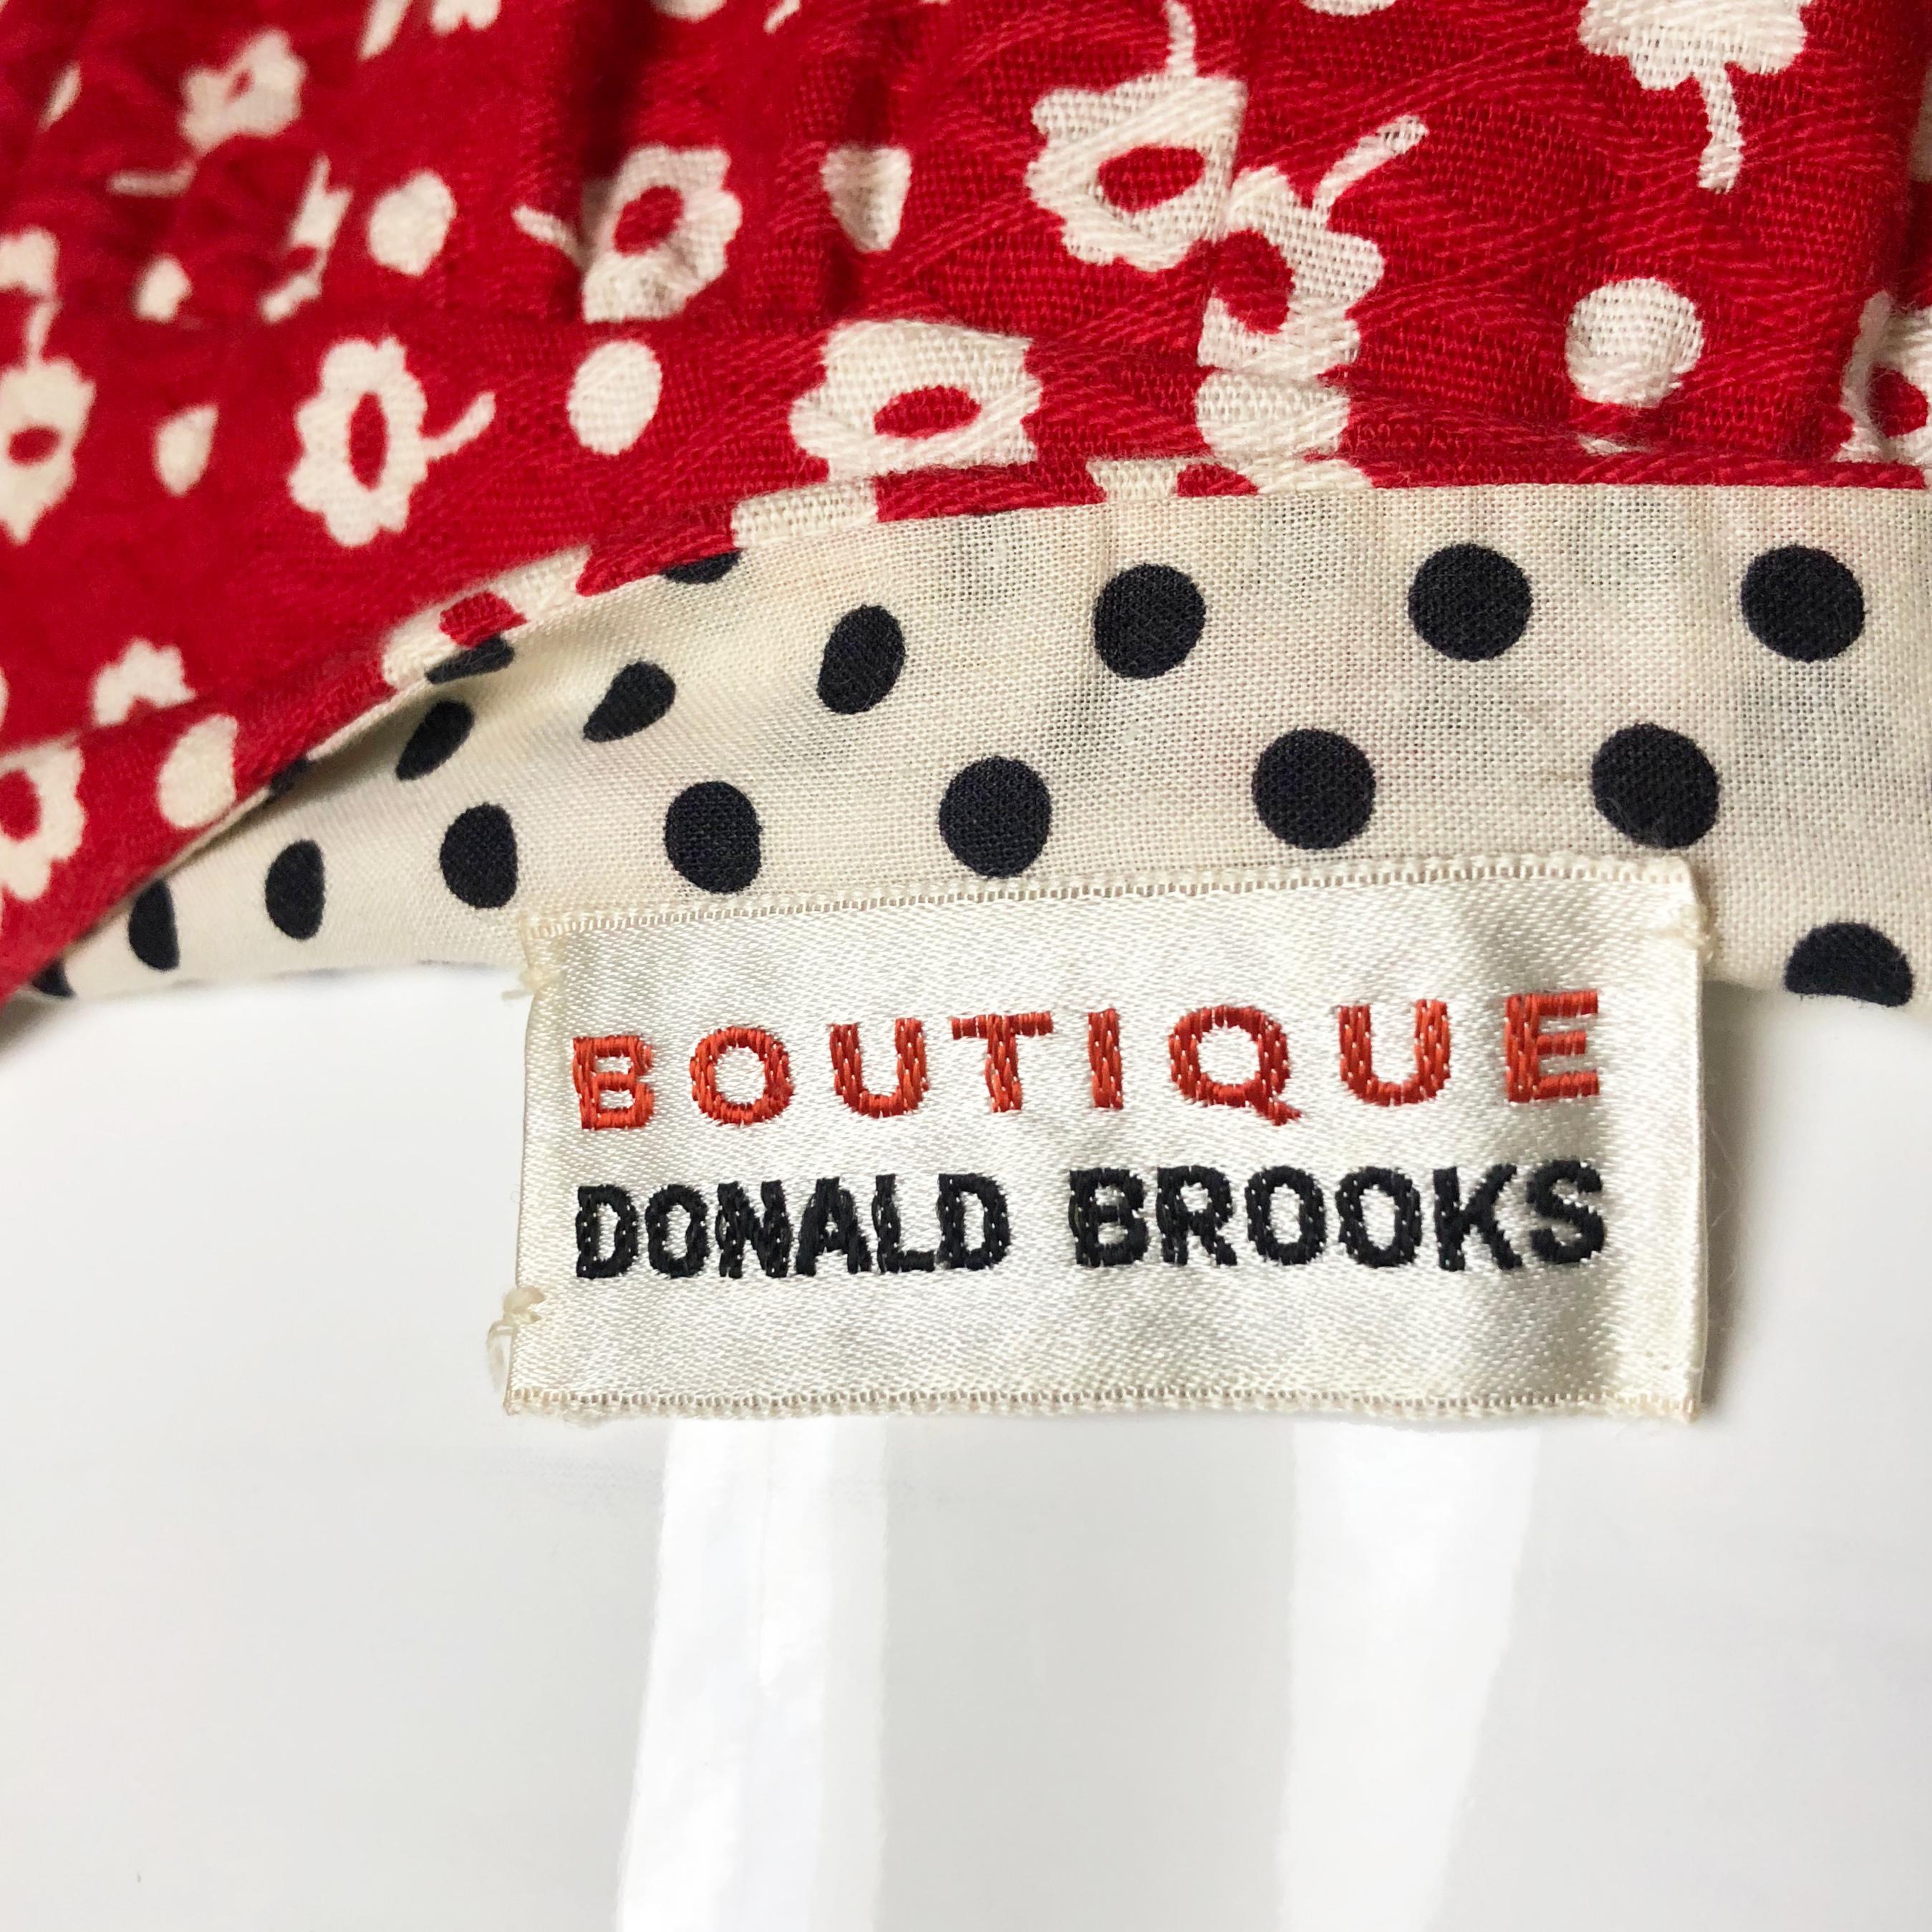 Donald Brooks Boutique Halter Top & Maxi Skirt 2pc Set Red White Floral Sz M 60s 3